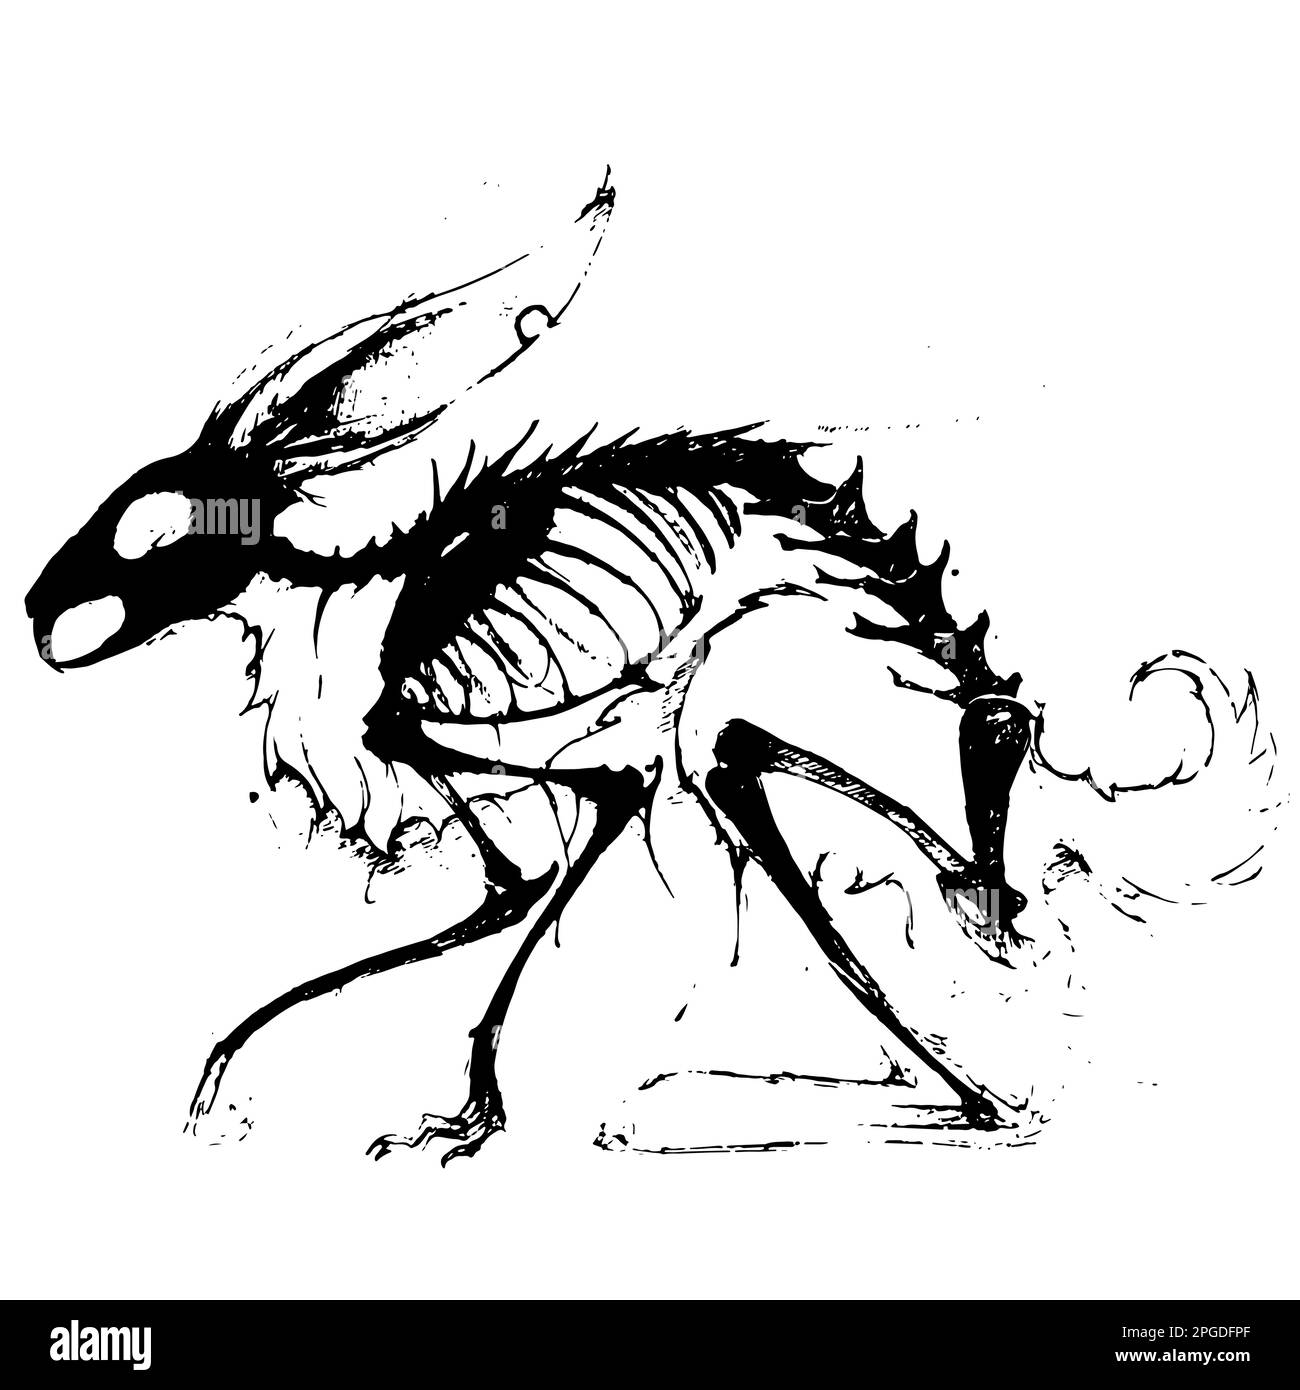 Illustration d'un système squelettique de lapin sur fond blanc stile d'esquisse, style crayon Illustration de Vecteur